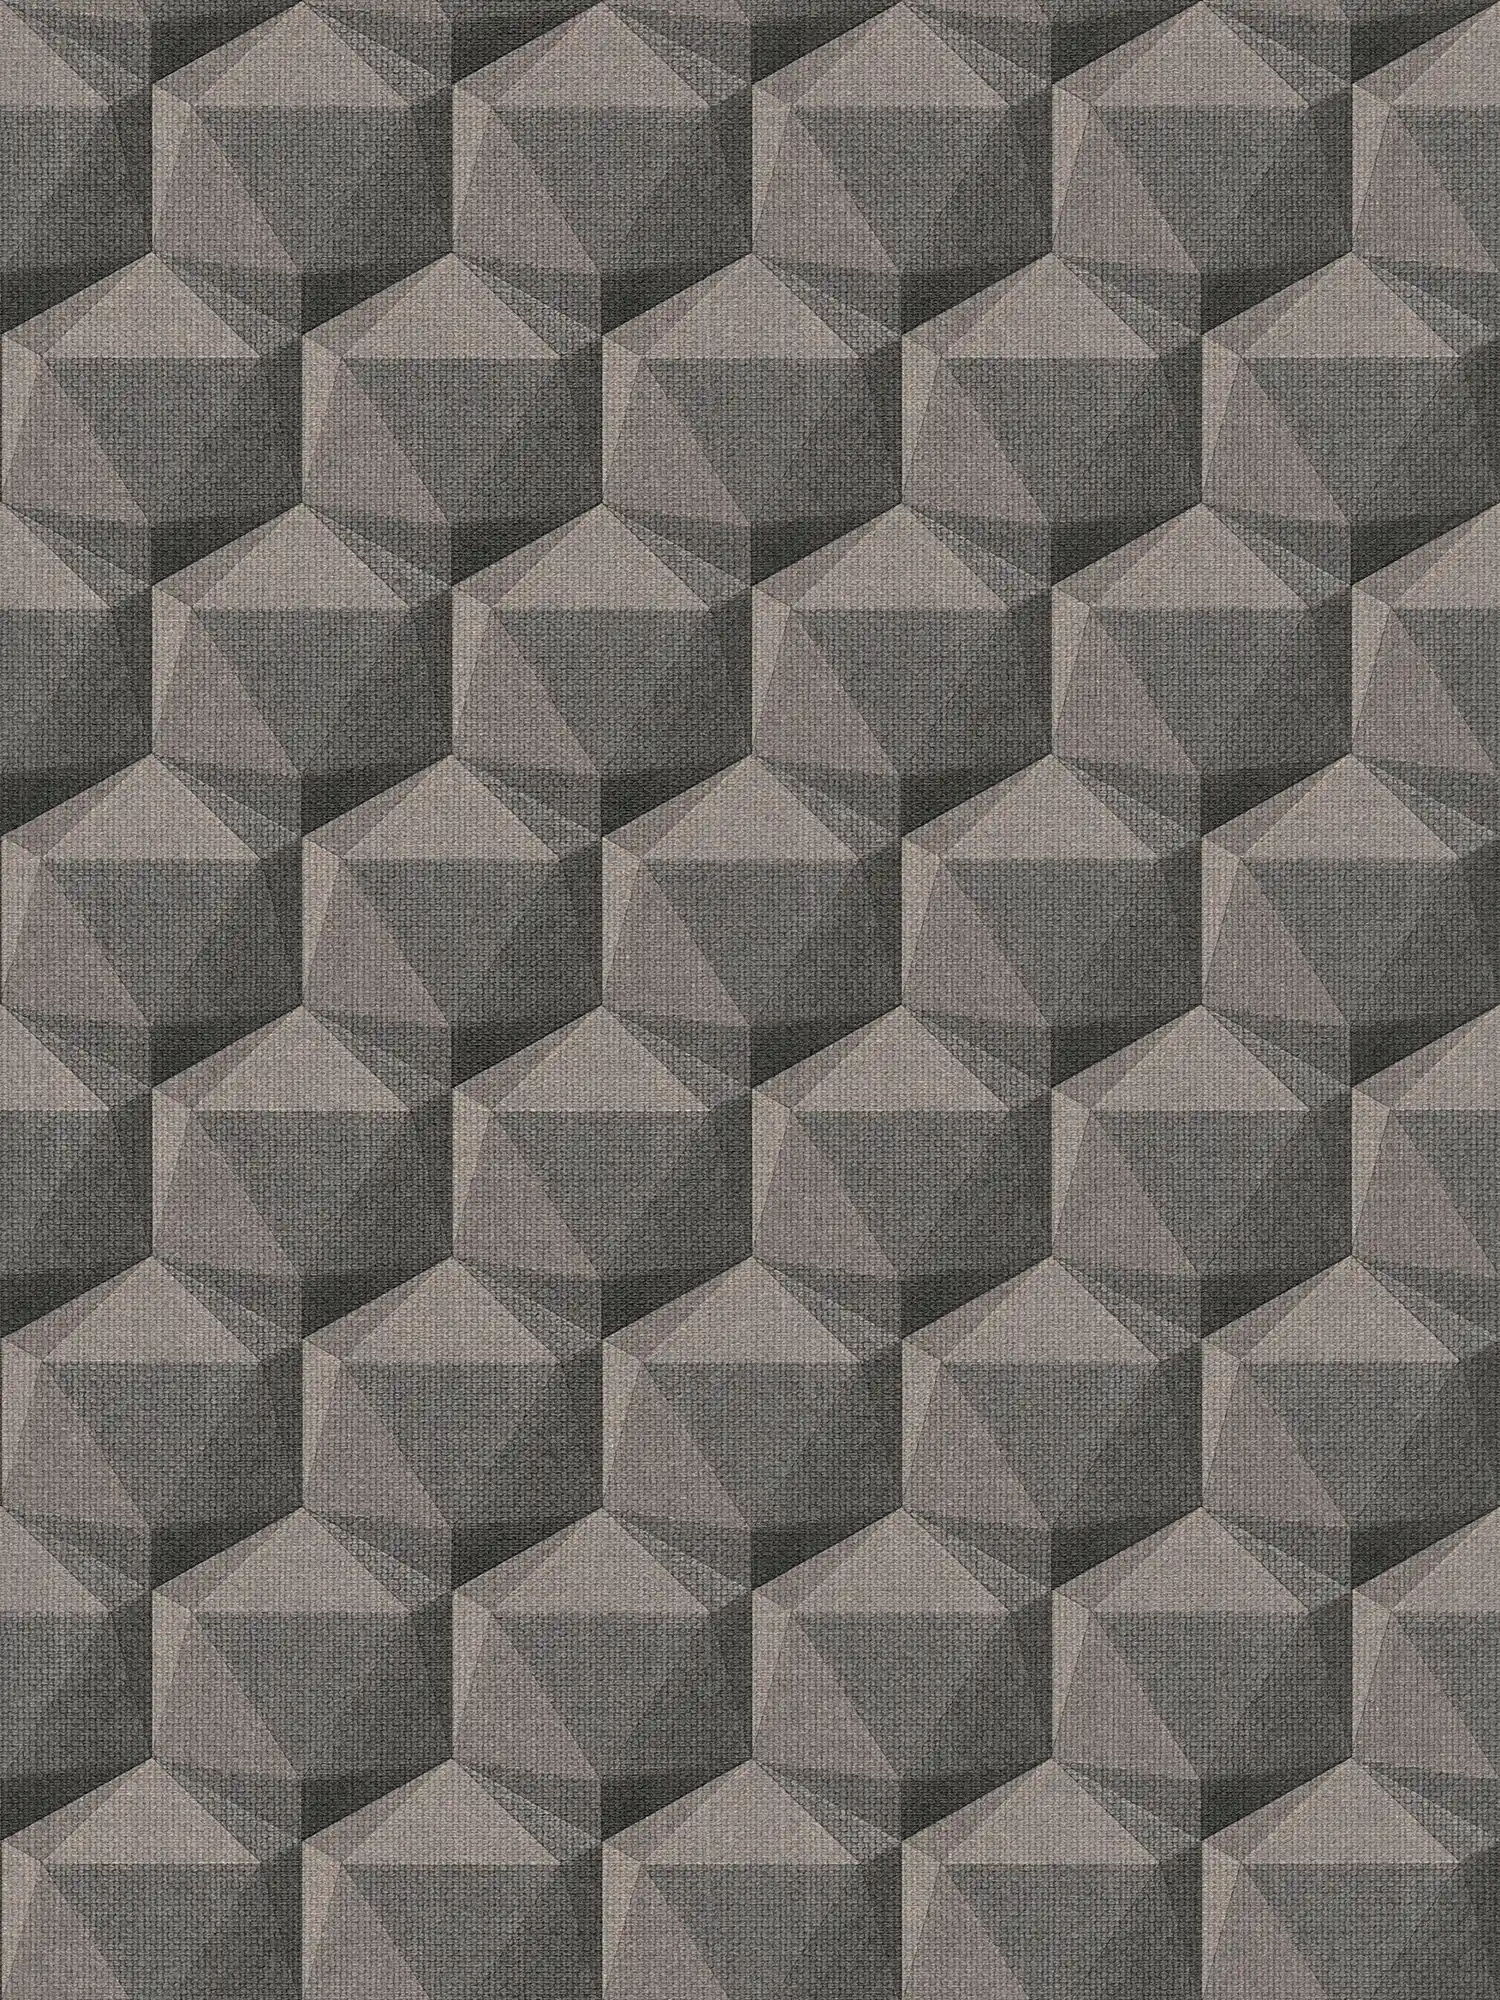 Carta da parati grafica ottica 3D con motivo poligonale - grigio, beige, nero
